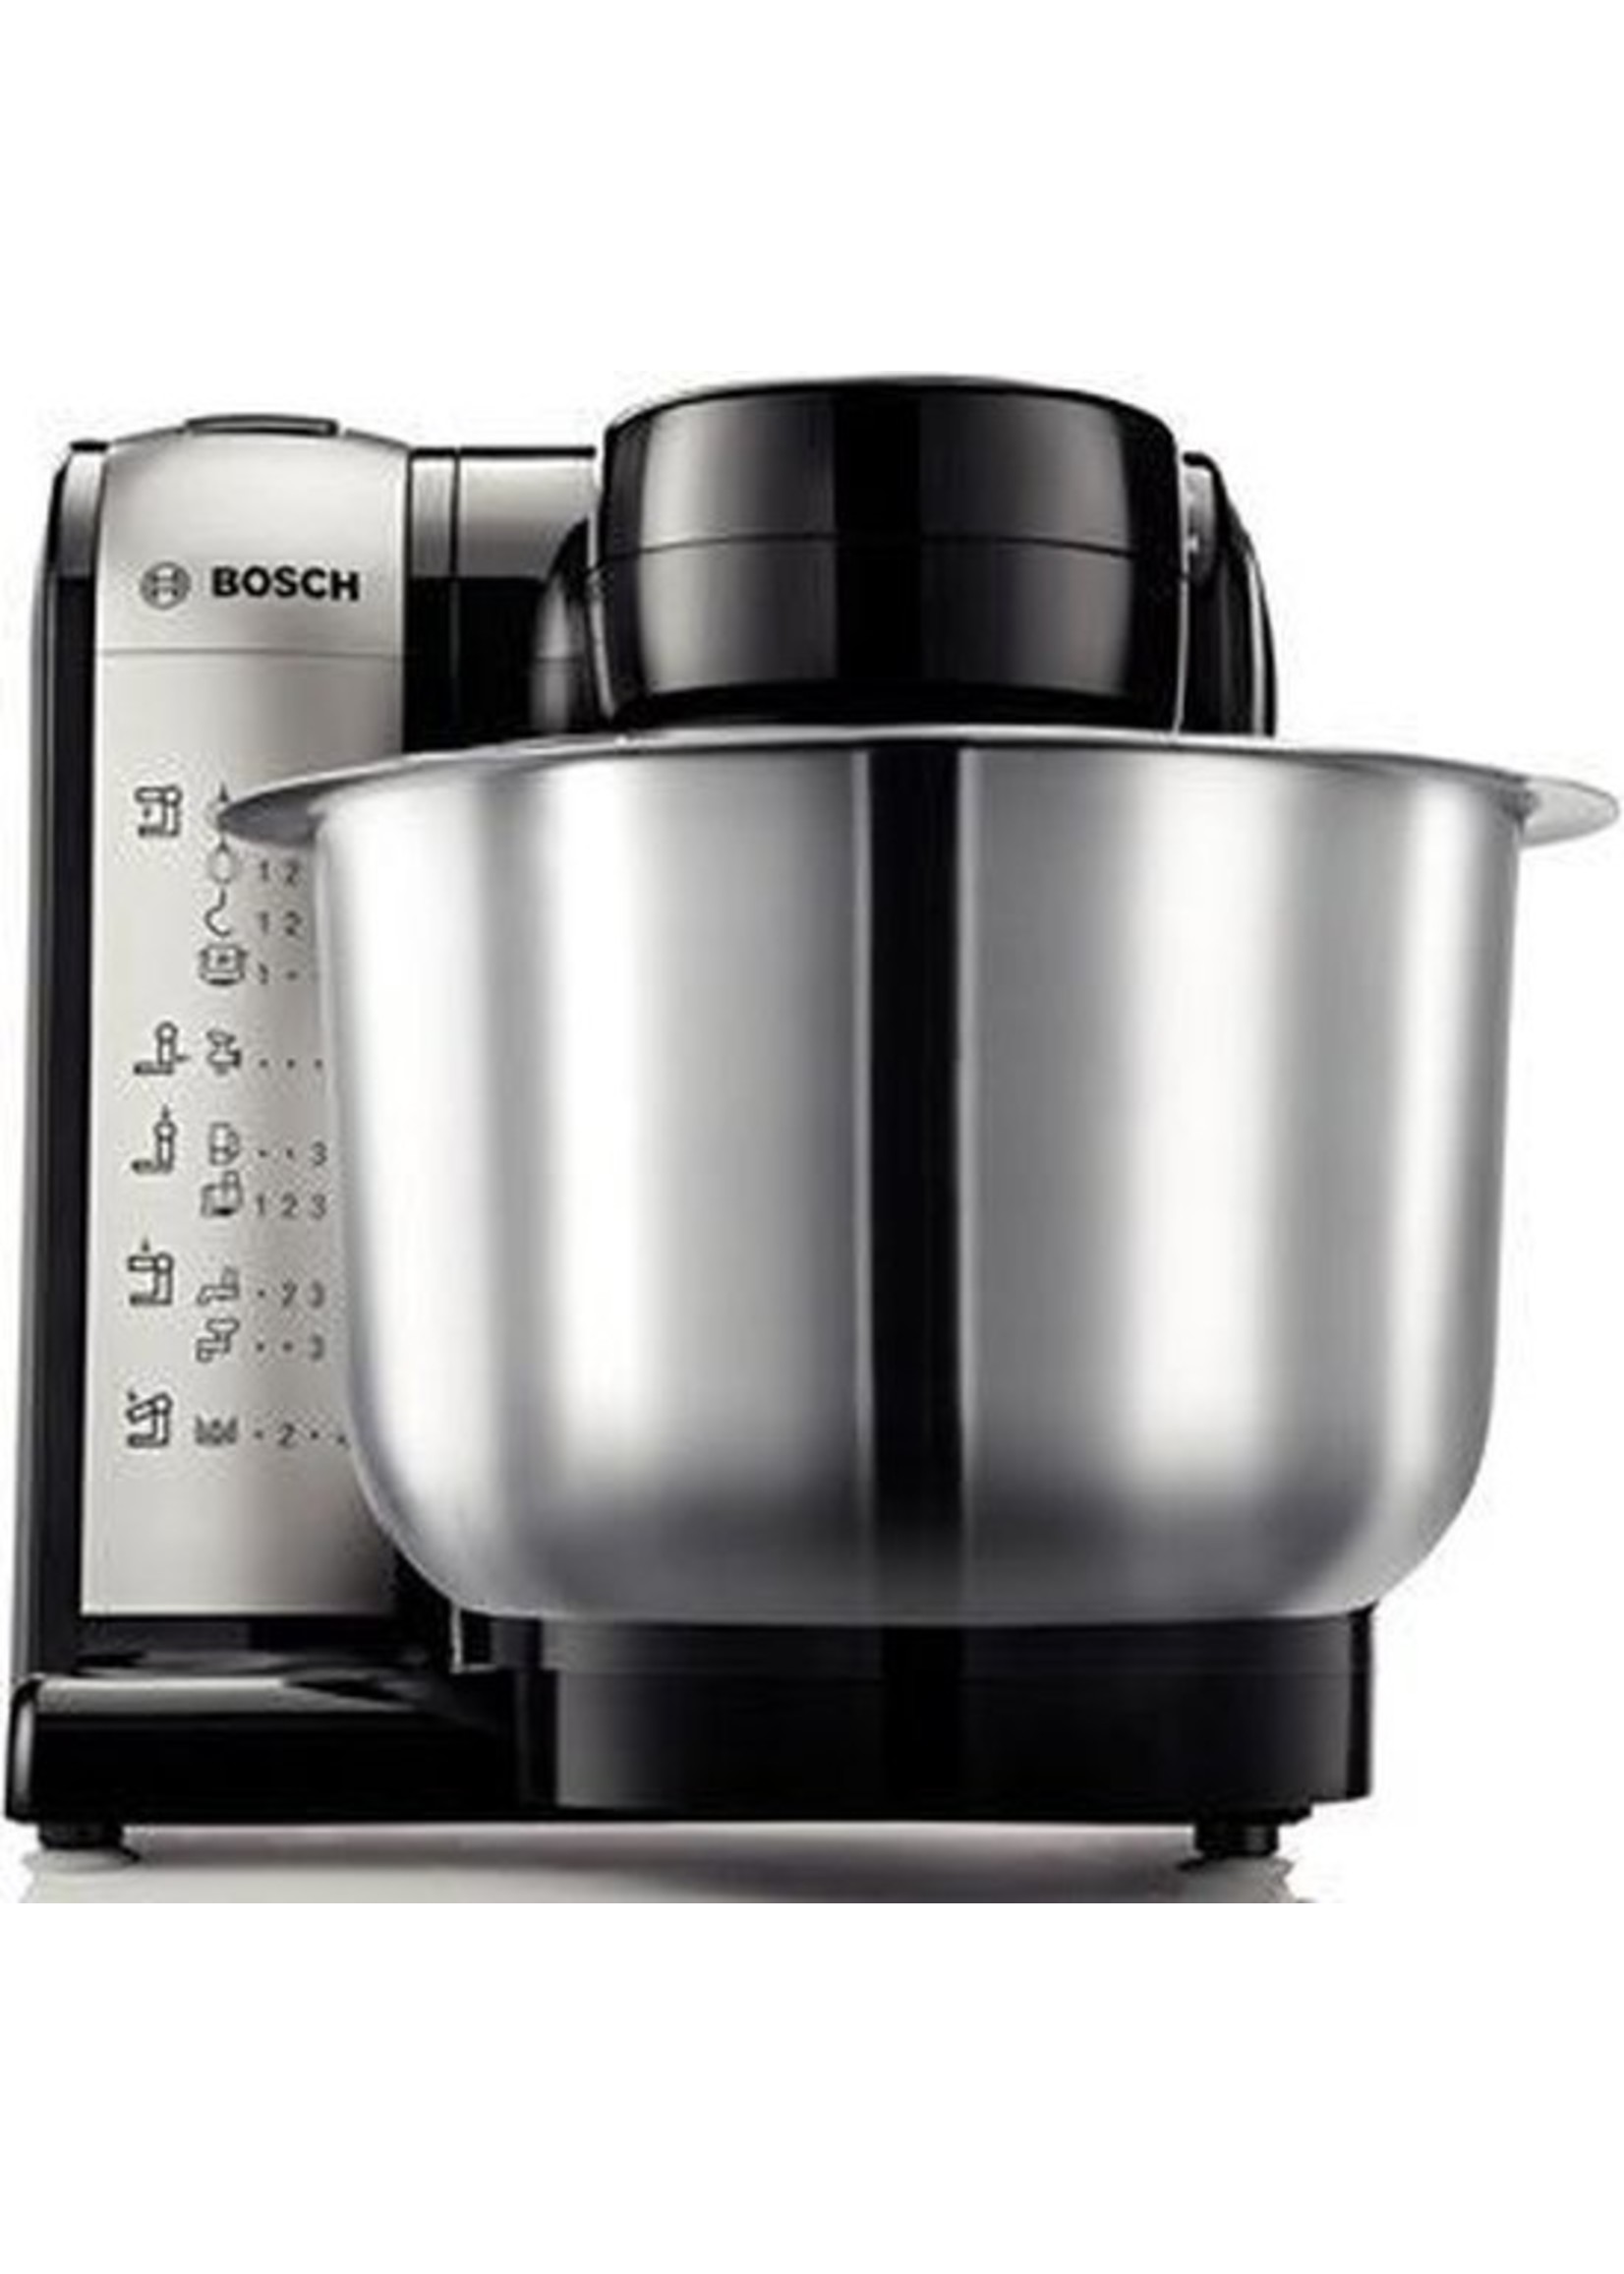 Bosch Bosch Keukenmachine antraciet 550 watt koopjeshoek